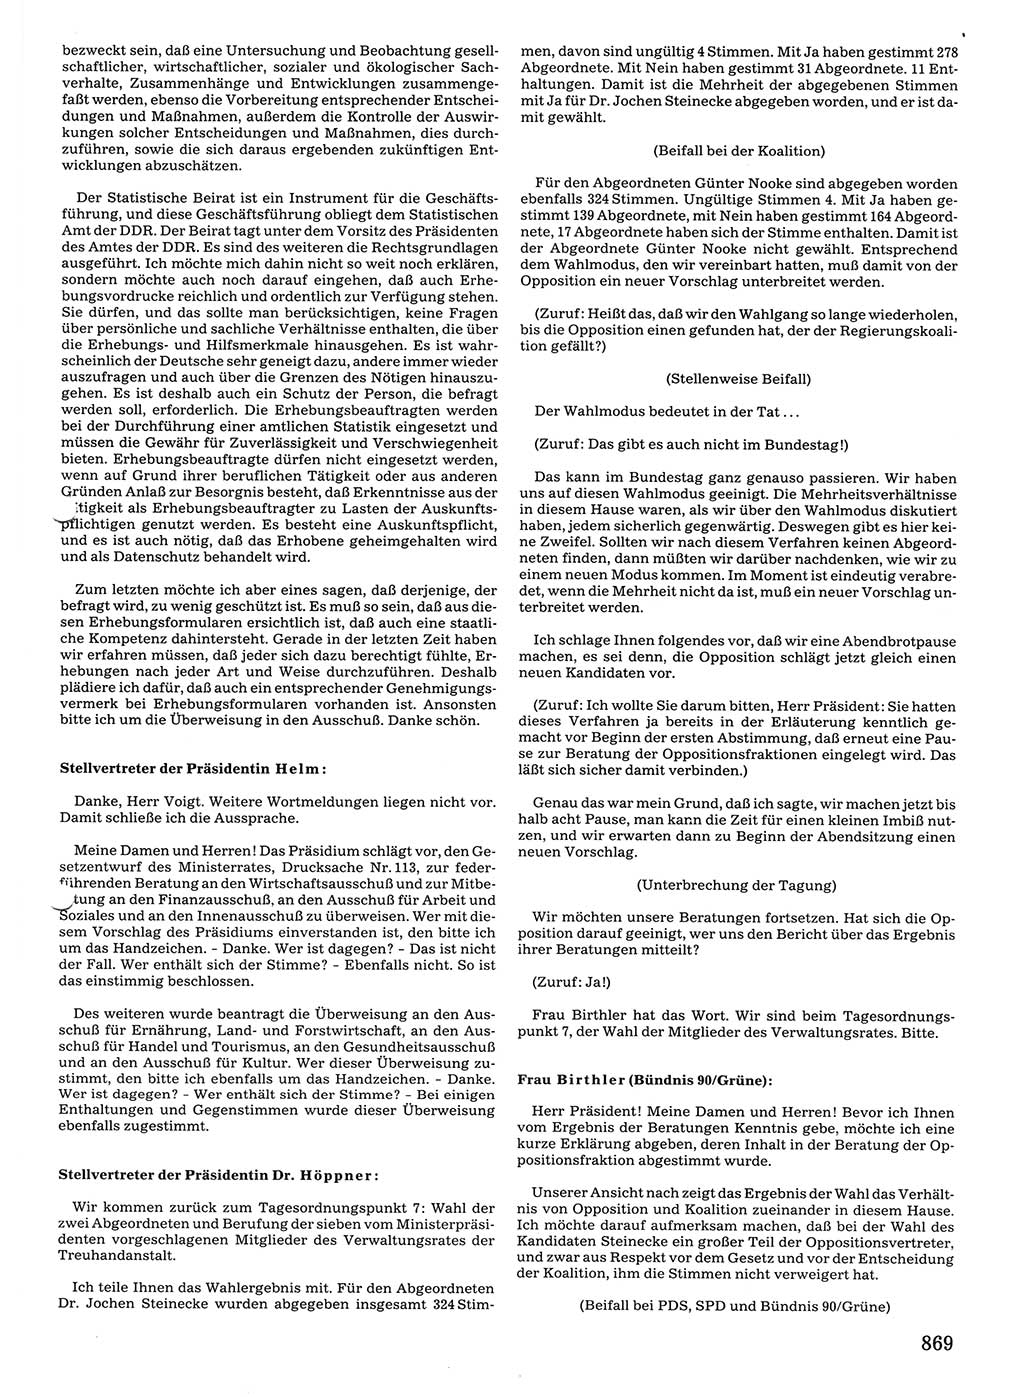 Tagungen der Volkskammer (VK) der Deutschen Demokratischen Republik (DDR), 10. Wahlperiode 1990, Seite 869 (VK. DDR 10. WP. 1990, Prot. Tg. 1-38, 5.4.-2.10.1990, S. 869)